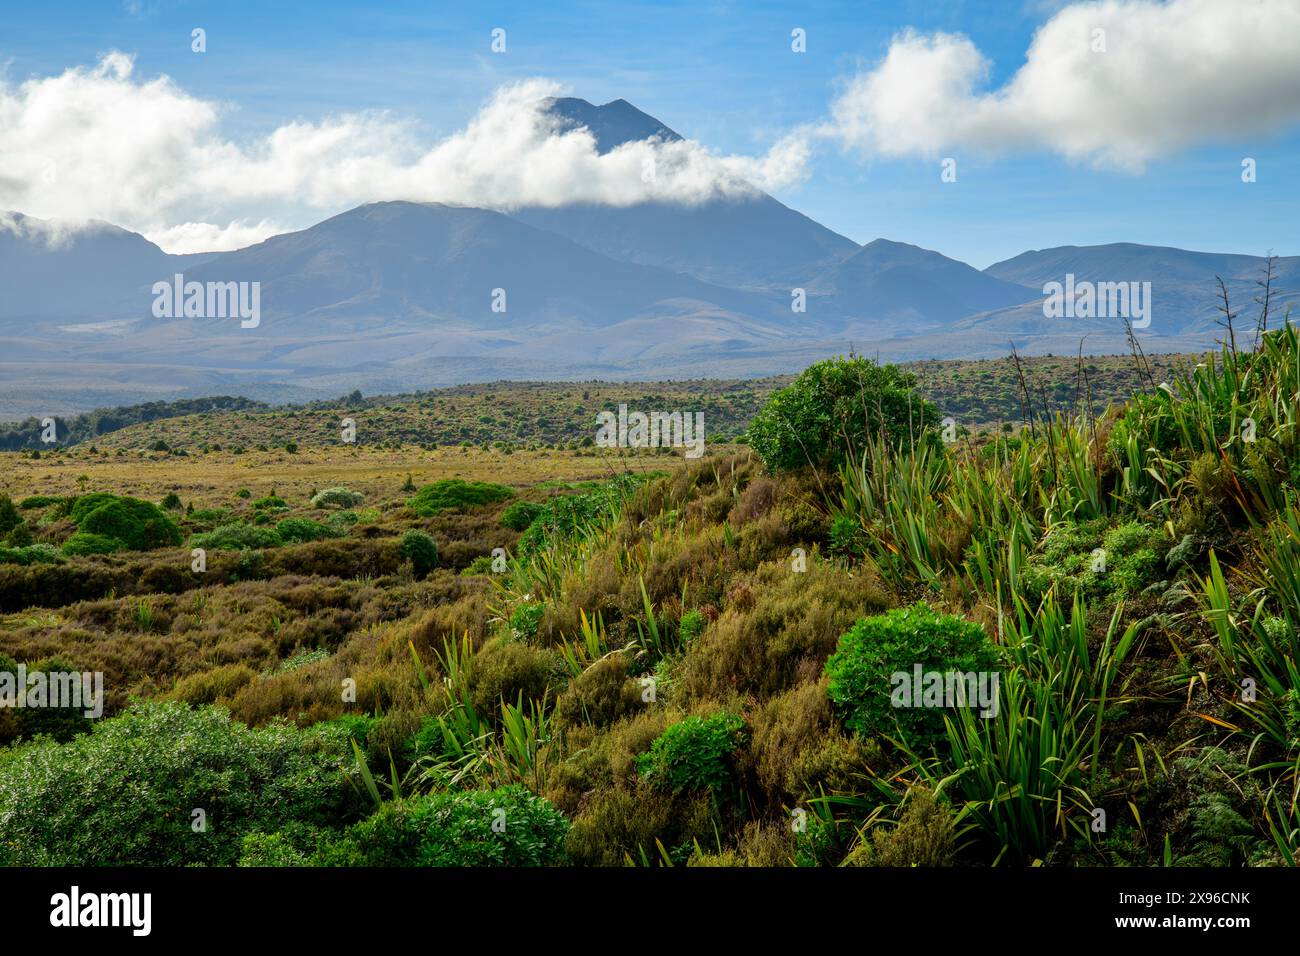 New Zealand, North Island, Tongariro National Park, Stock Photo